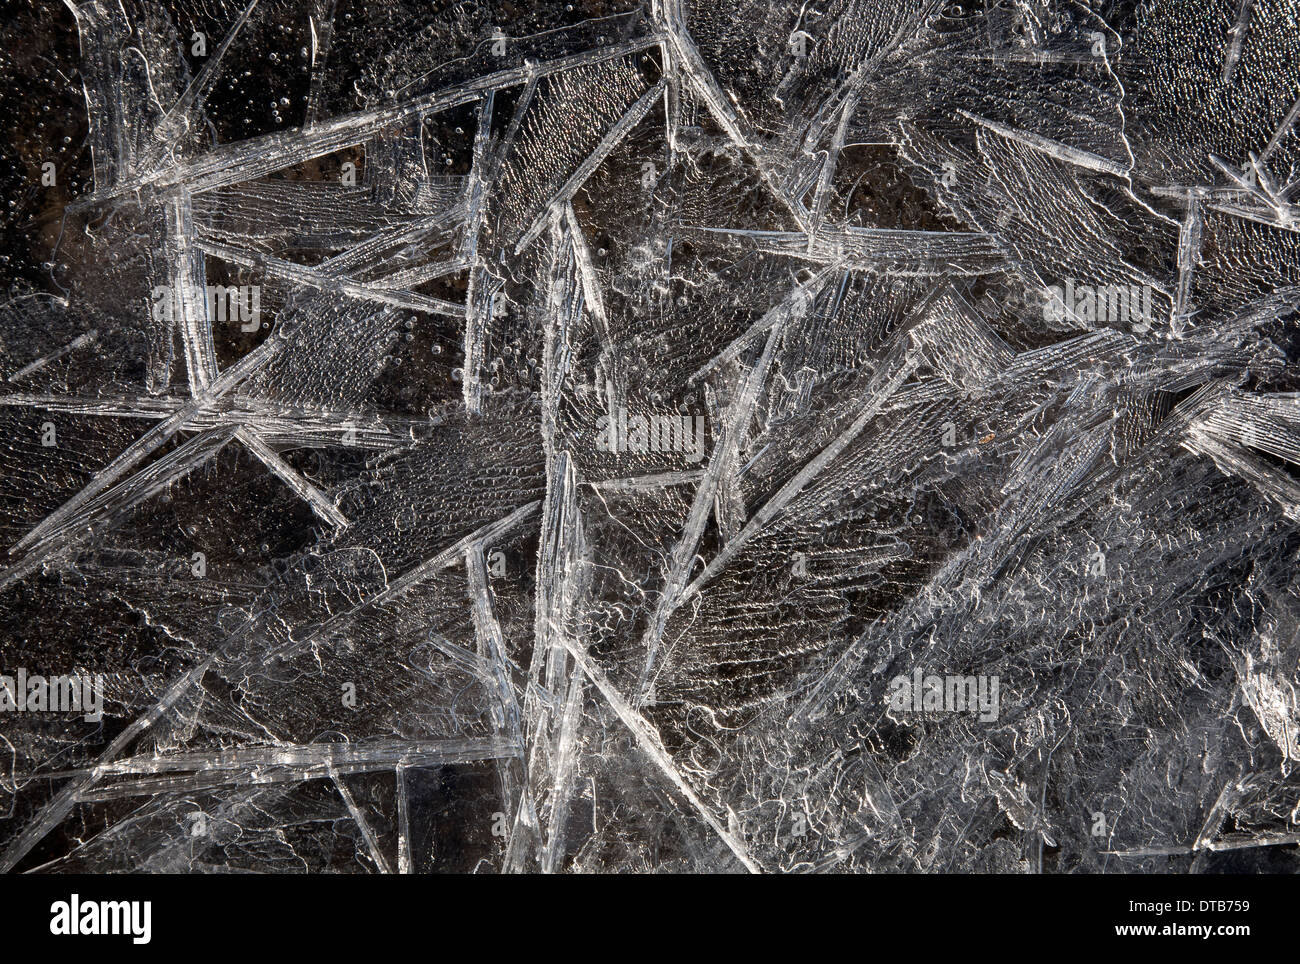 WASHINGTON - Les cristaux de glace le long des rives de la Skagit Eau douce dans le marécage de faune sur l'île de sapin. Banque D'Images